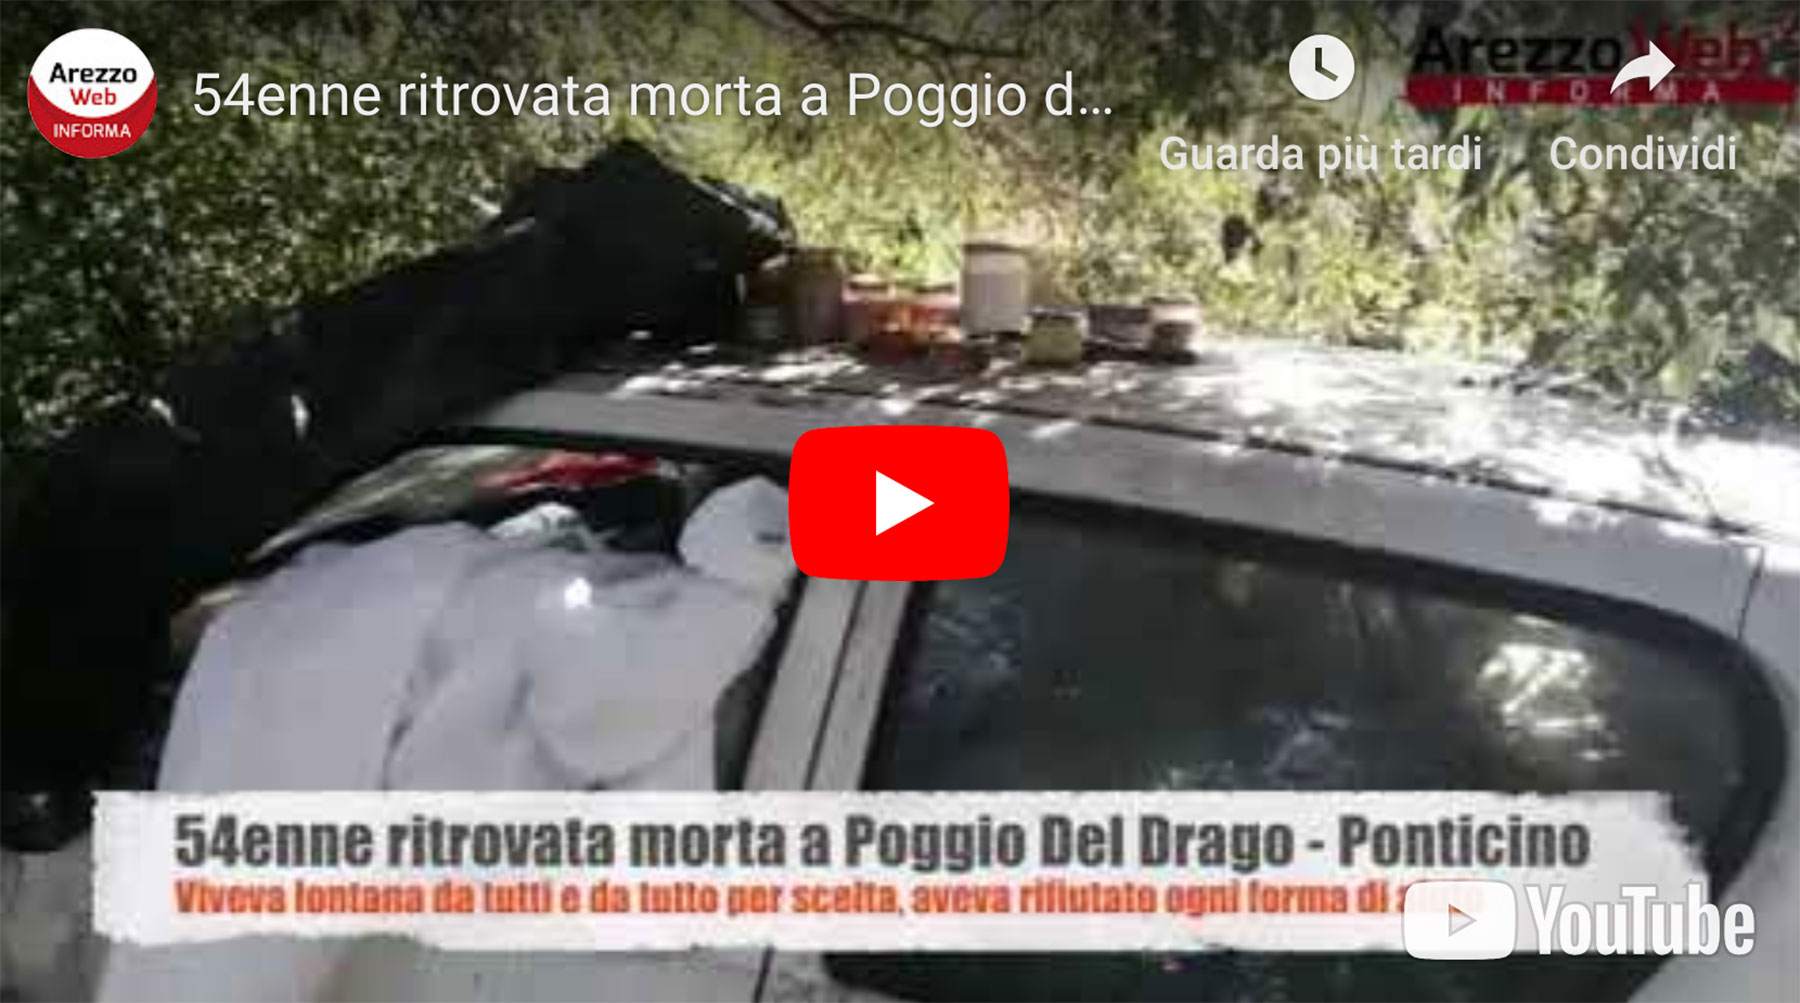 54enne ritrovata morta a Ponticino – video del luogo